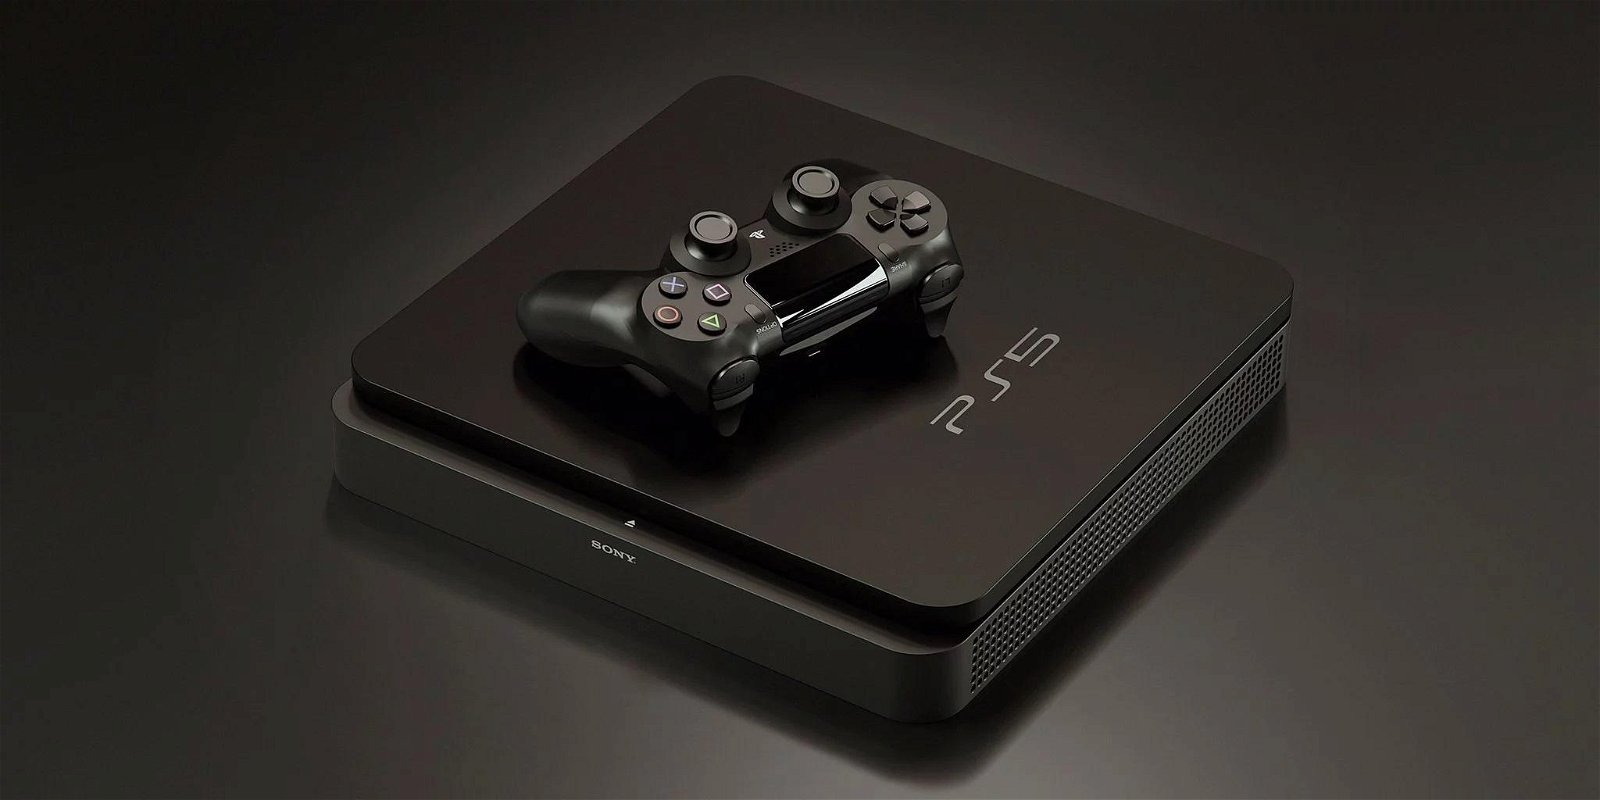 GTA 6: fan realizza una spettacolare cover della versione PS5